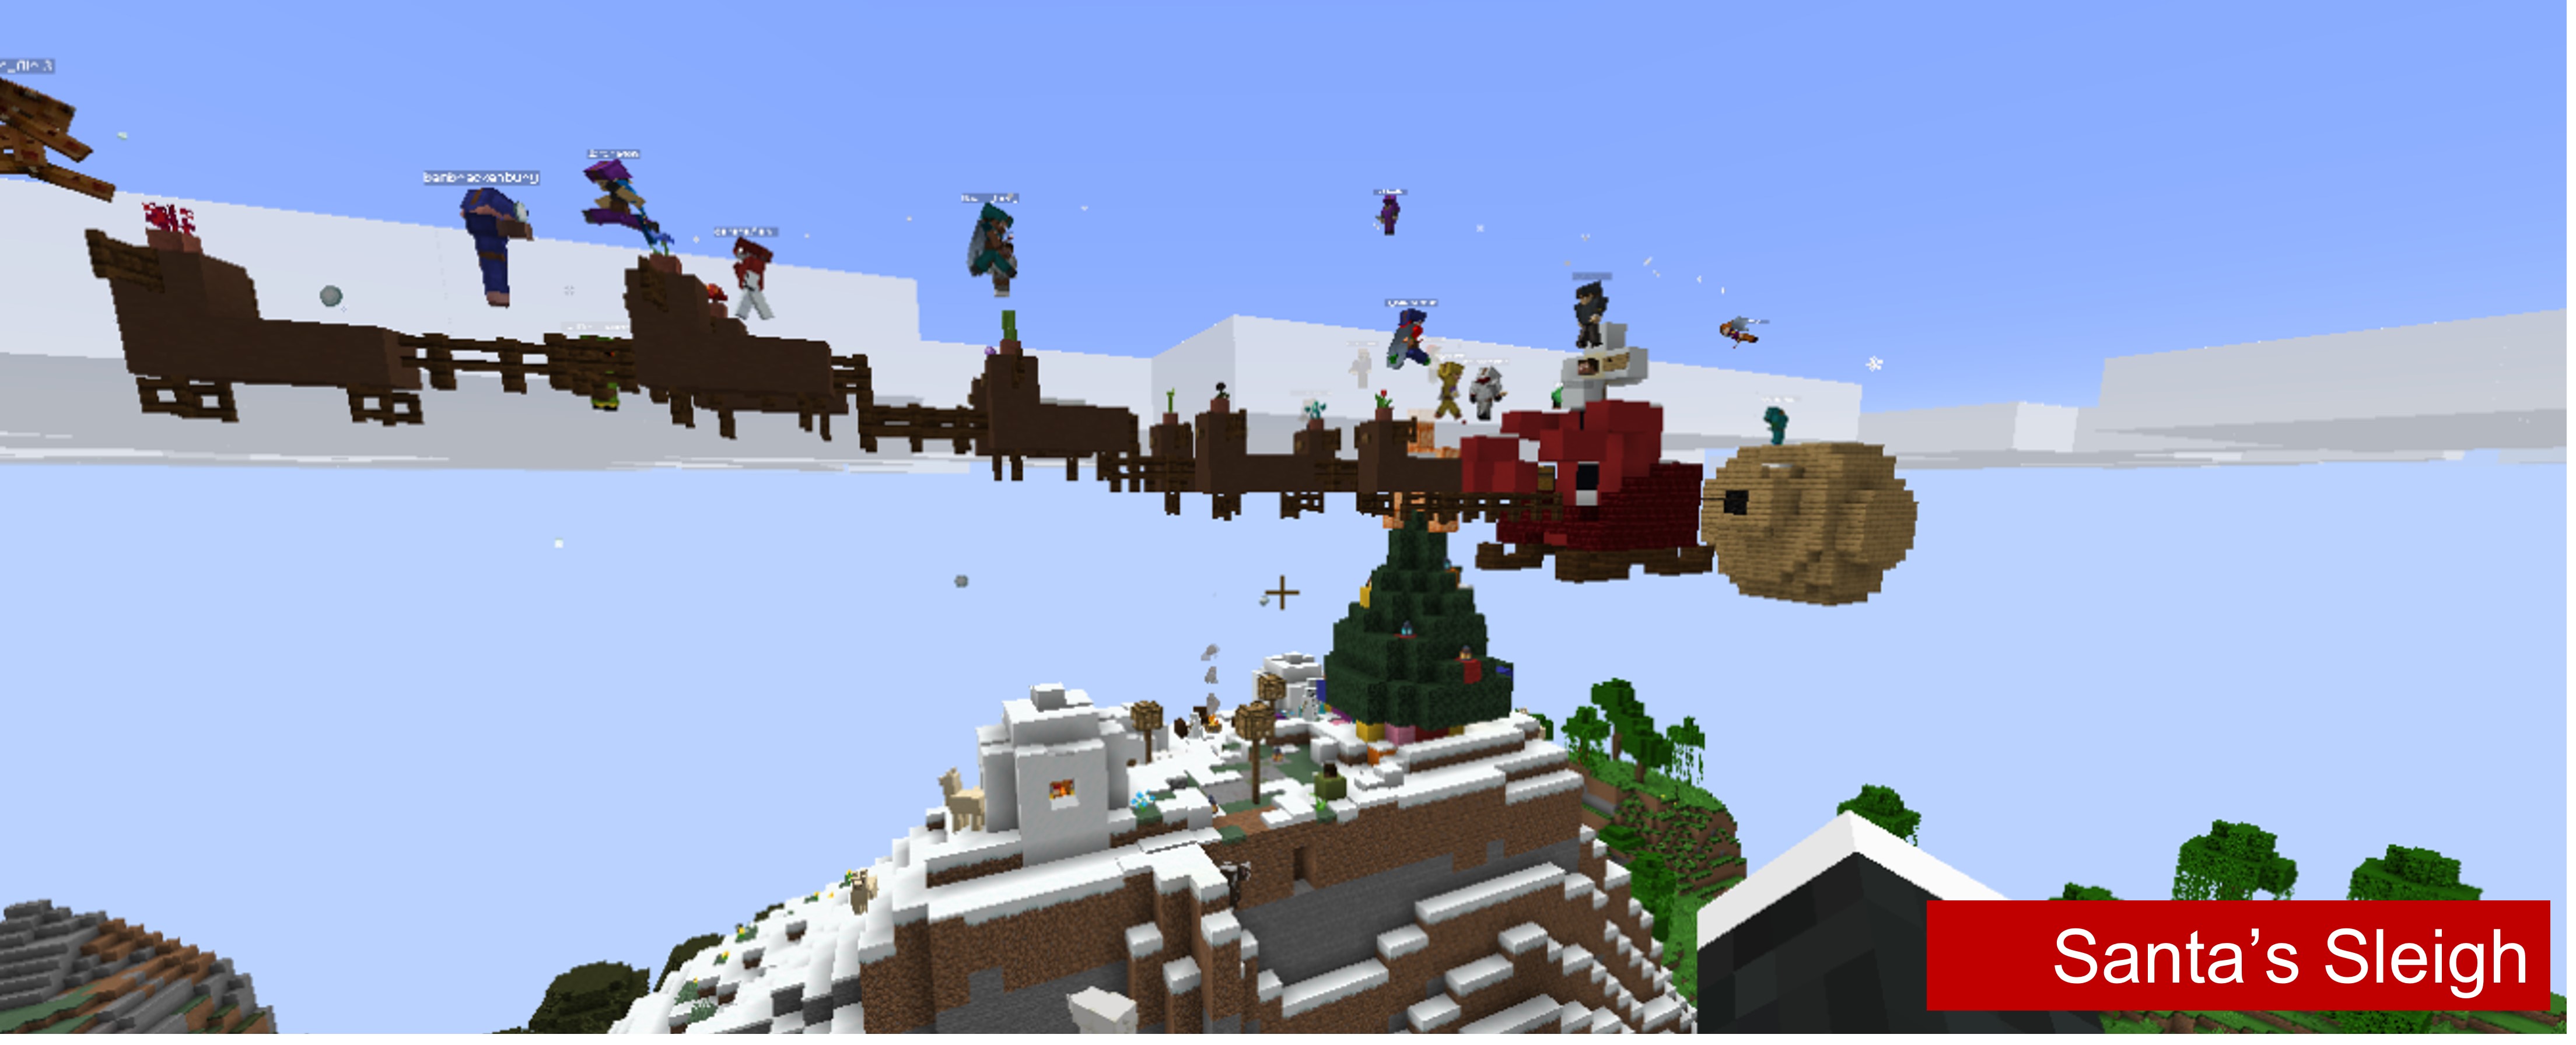 Santa's sleigh flying through the air